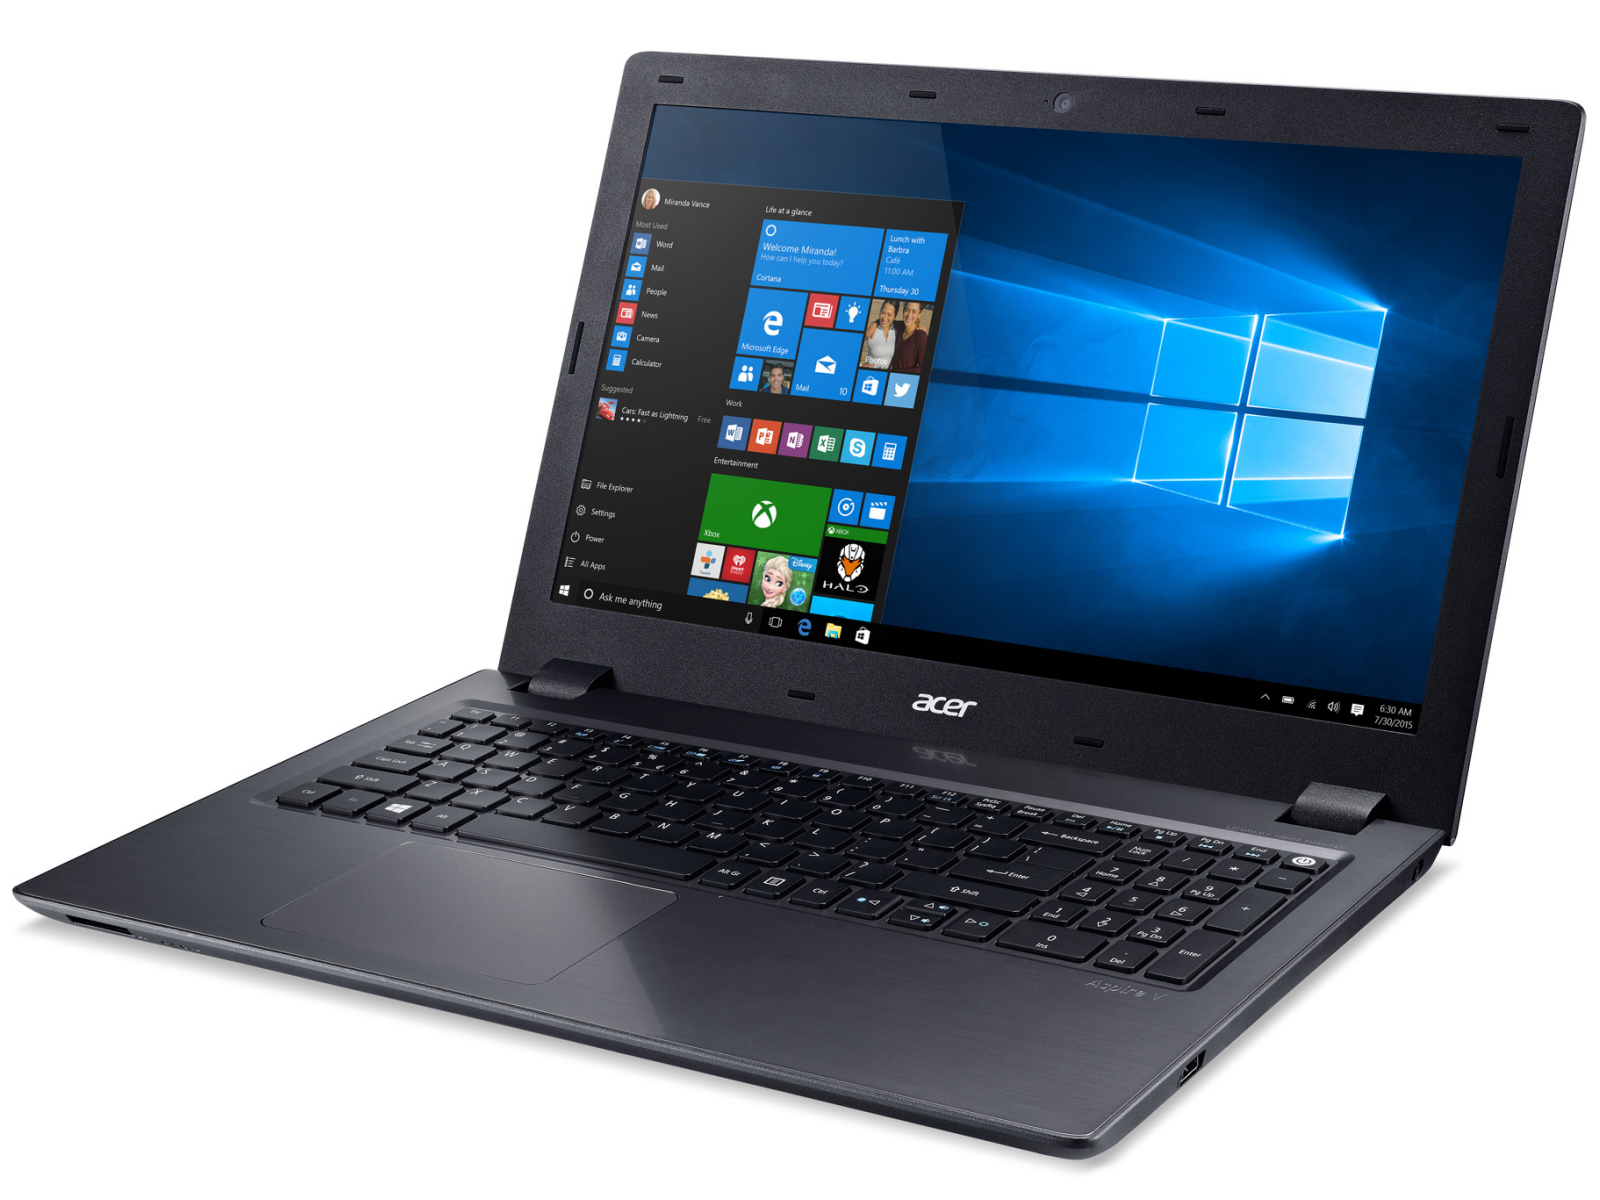  Acer Aspire V5 591G 71K2 Notebookcheck com Externe Tests